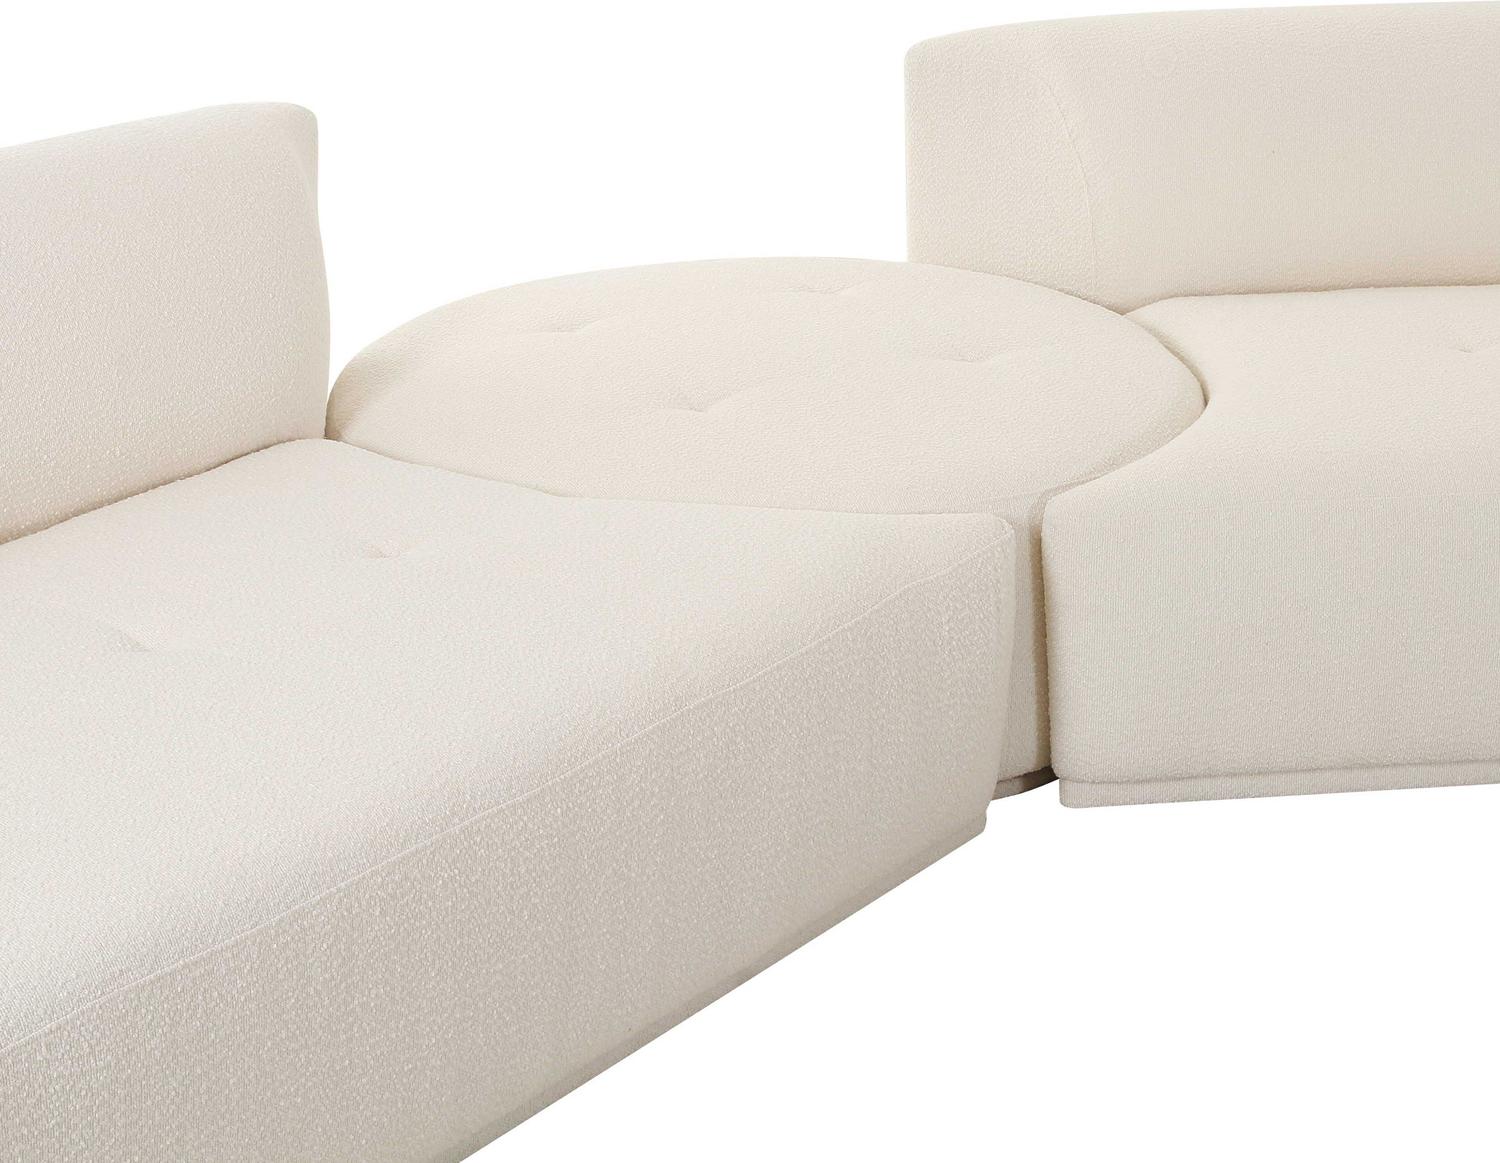 velvet furniture Contemporary Design Furniture Sectionals Cream